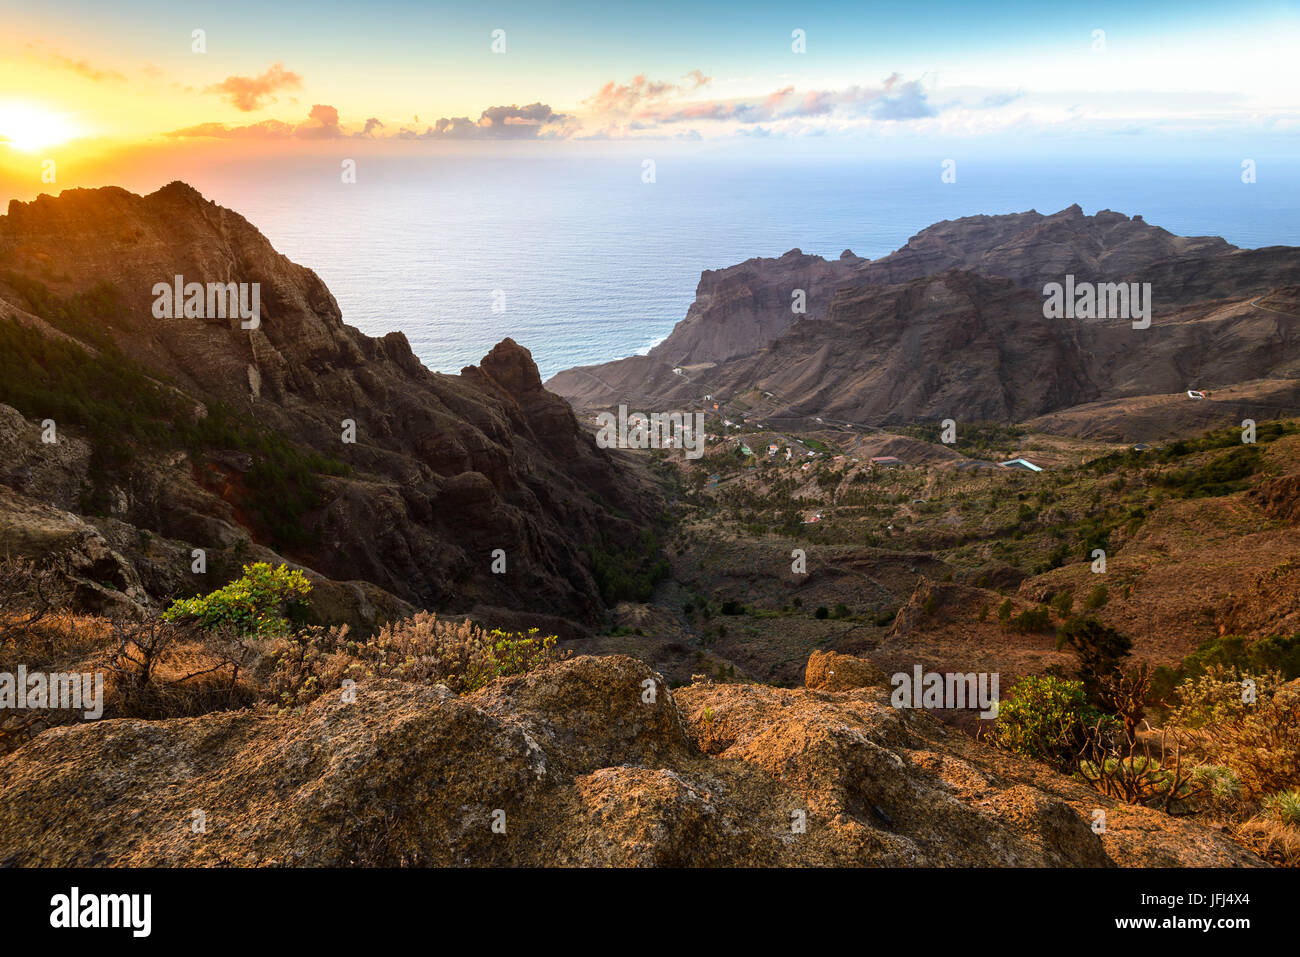 Valle Gran Rey, coucher du soleil, la Gomera, Canary Islands, Spain Banque D'Images